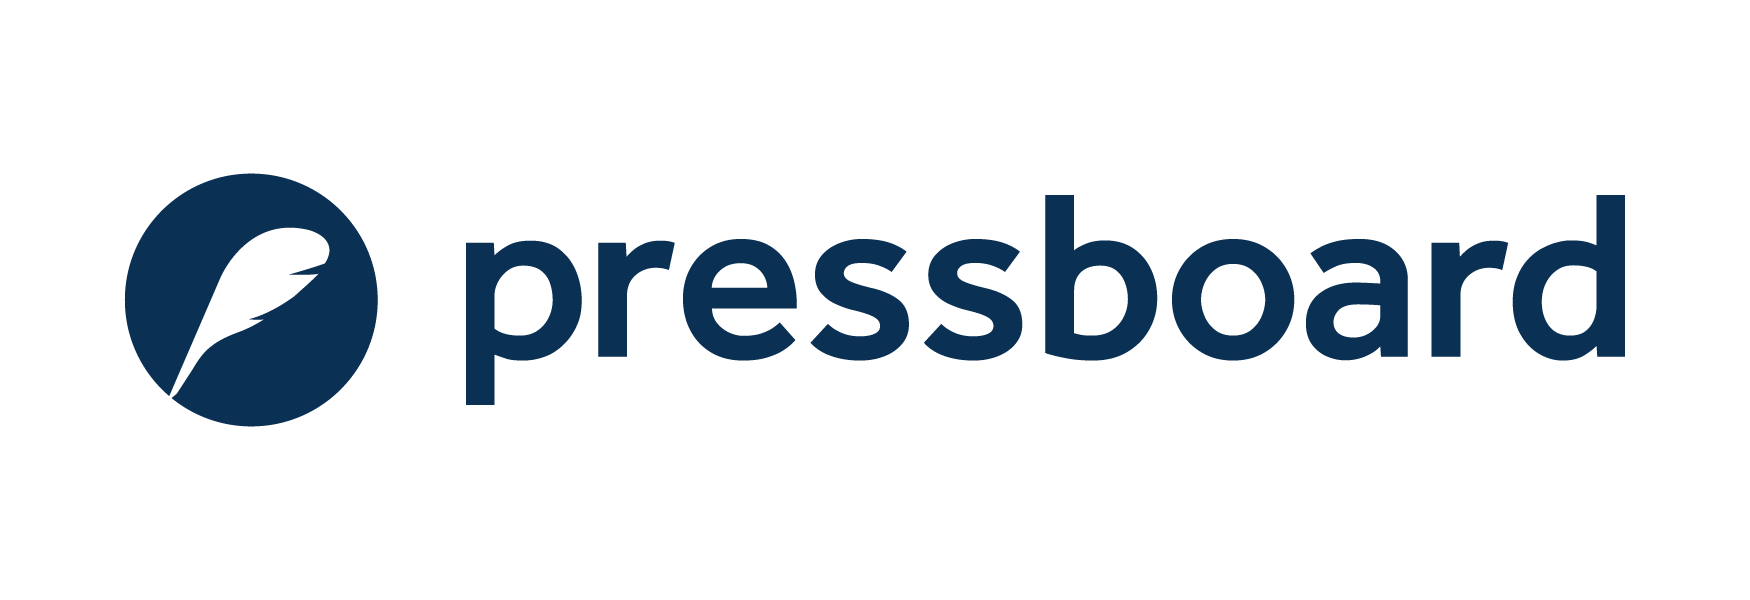 pressboard-logo-navy